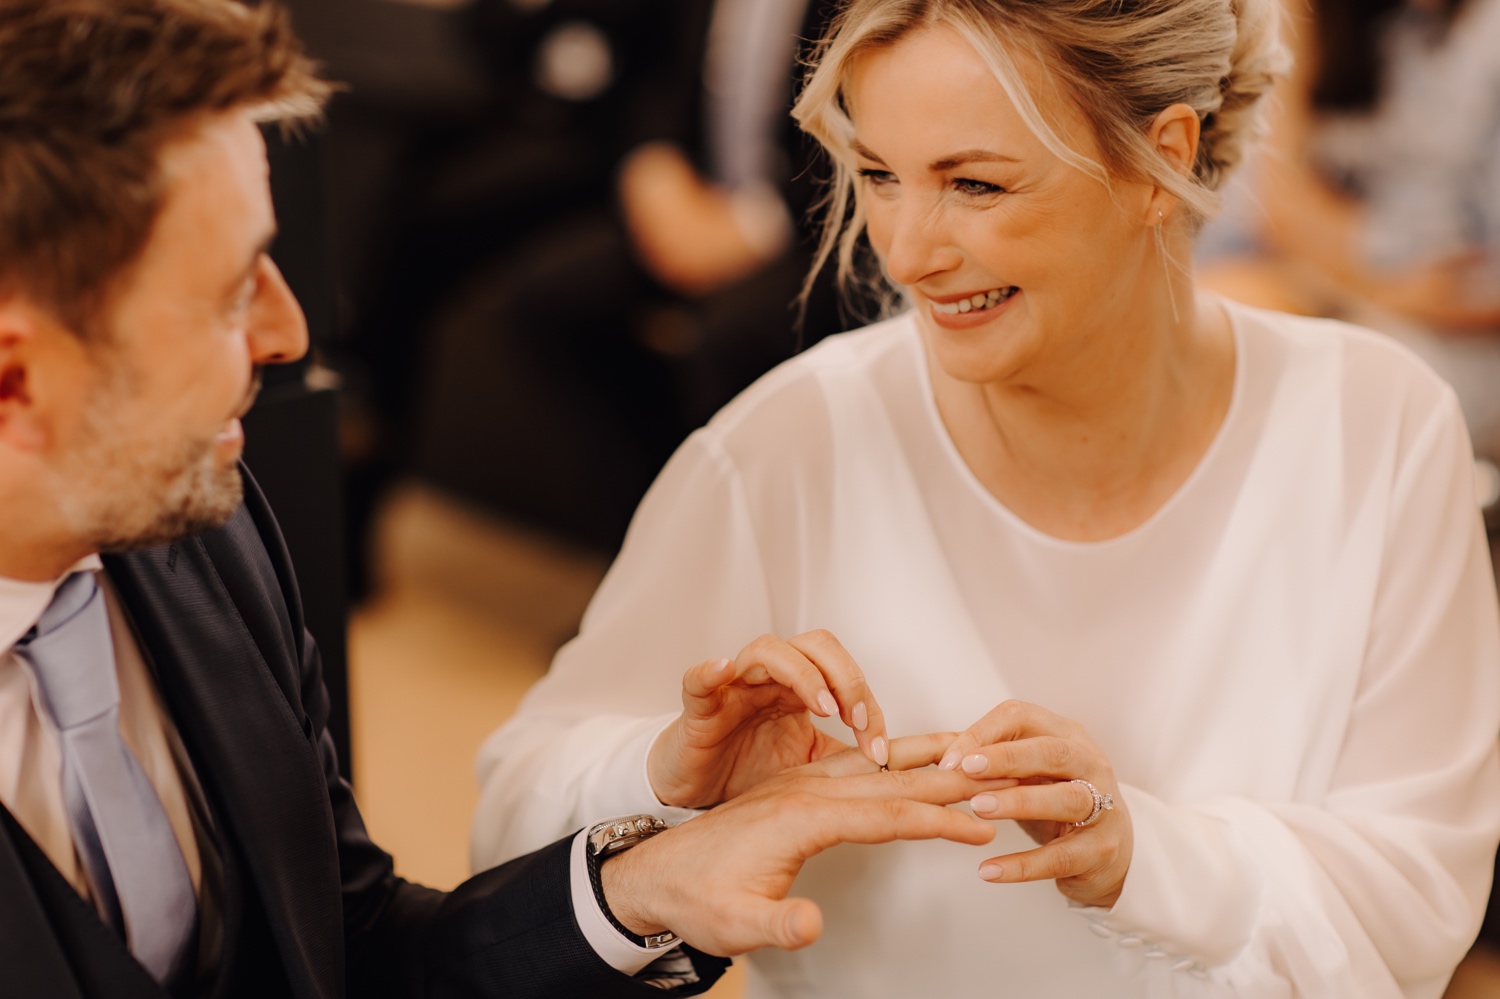 Huwelijksfotograaf Limburg - bruid lacht terwijl ze ring om vinger bruidegom doet